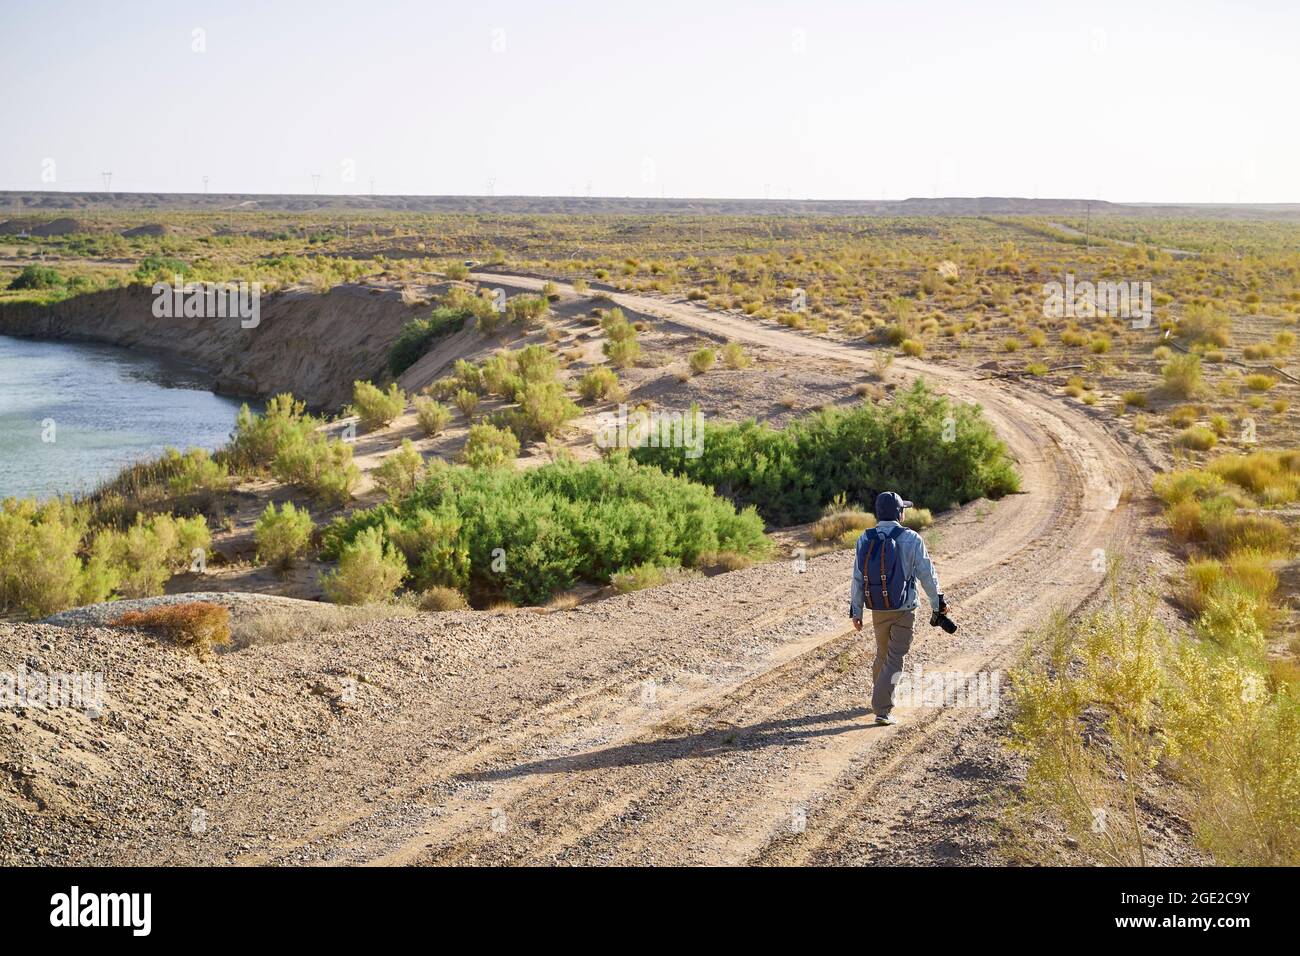 ein asiatischer Fotograf, der in der Wüste gobi auf einer unbefestigten Straße unterwegs ist und die Landschaft bei Sonnenuntergang betrachtet Stockfoto